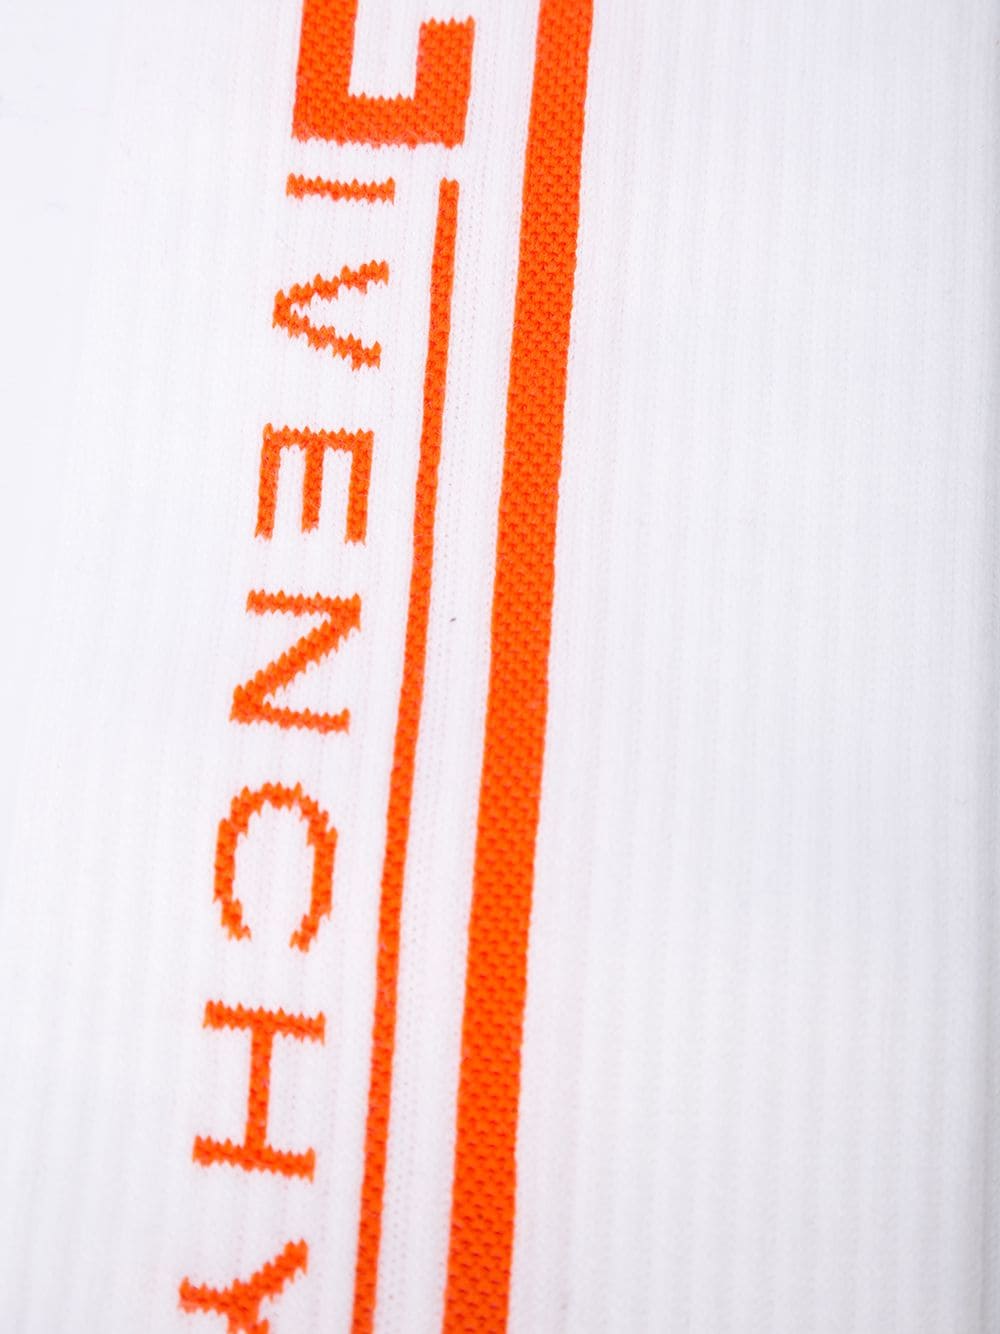 фото Givenchy носки вязки интарсия с логотипом